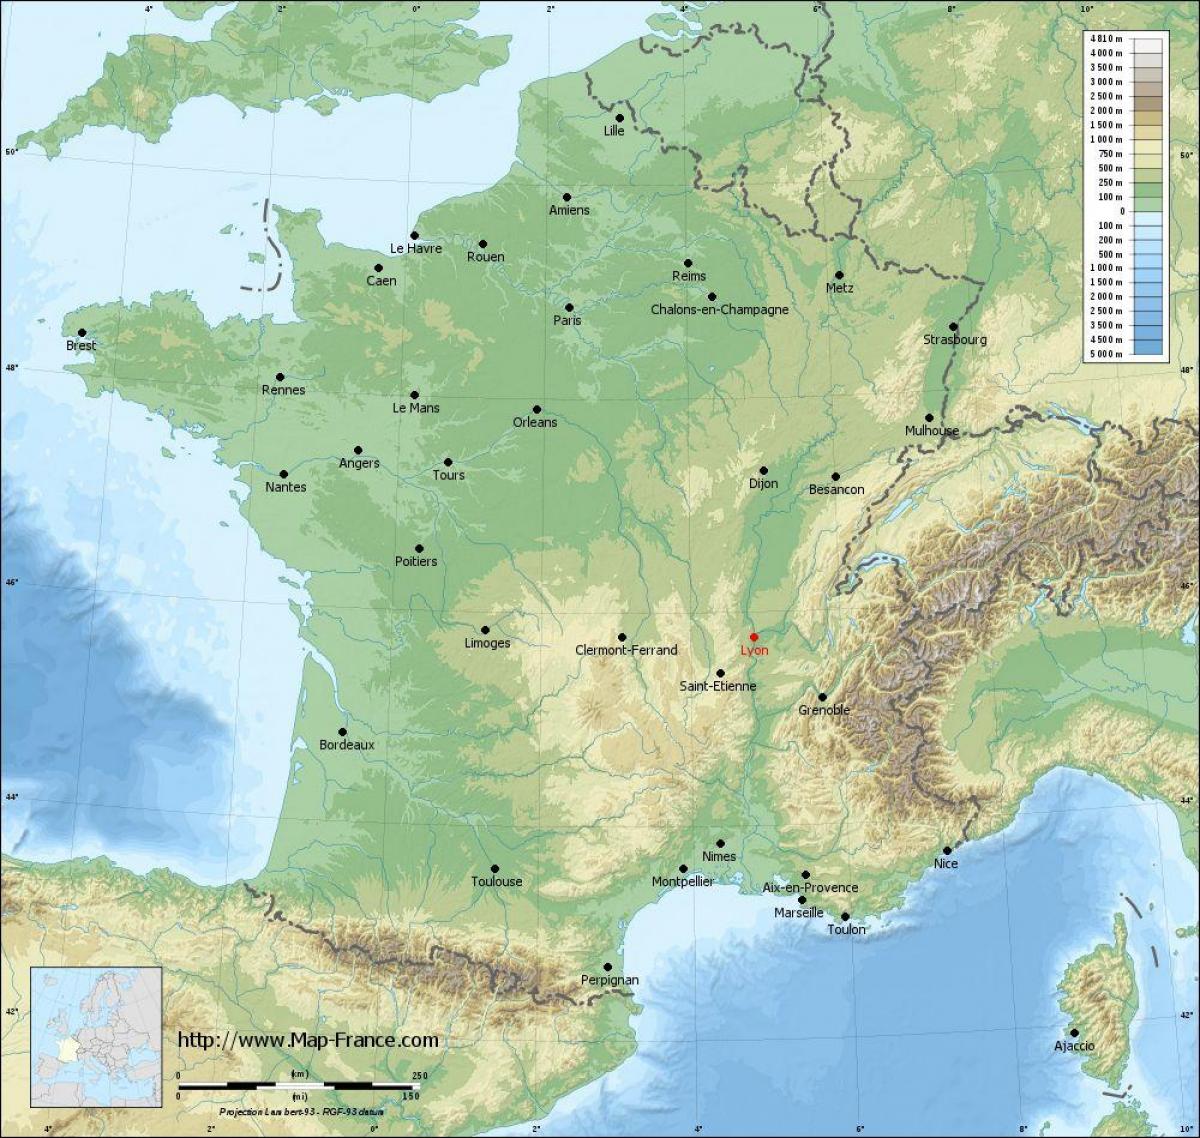 แผนที่ของ france_ regions. kgm geographic